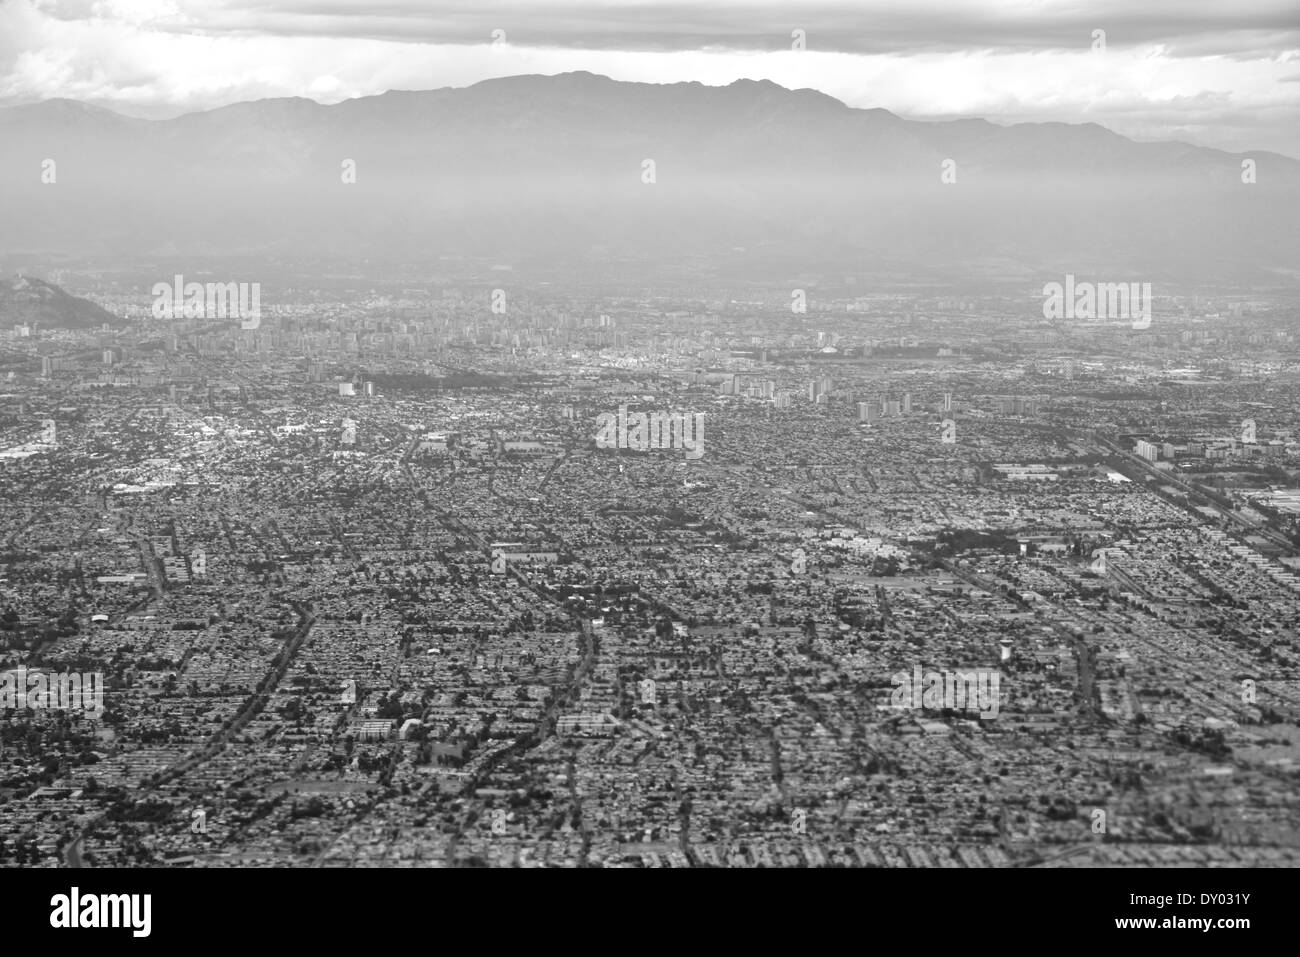 Vue aérienne de Santiago de Chili Amérique du Sud, les montagnes de Pentecôte en noir et blanc sur l'arrière-plan. Banque D'Images